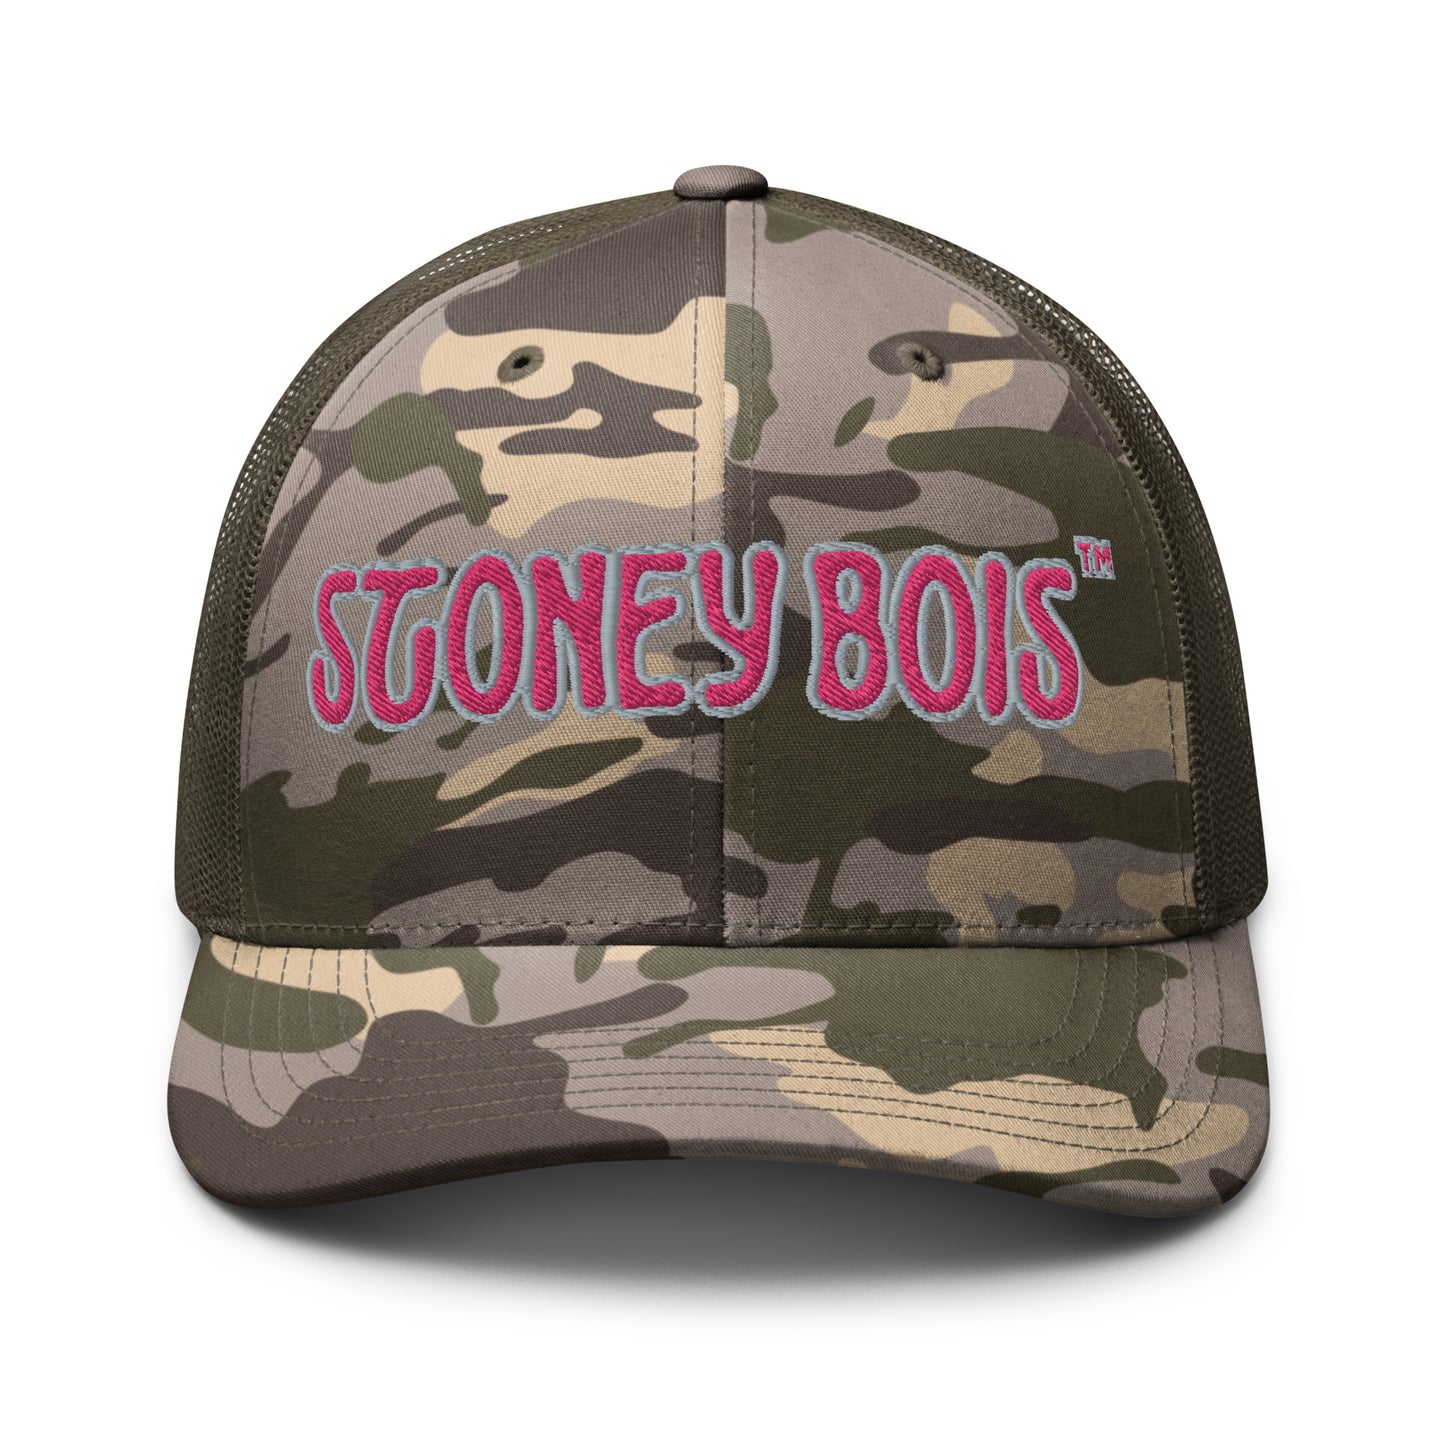 StoneyBois™ Camouflage trucker hat